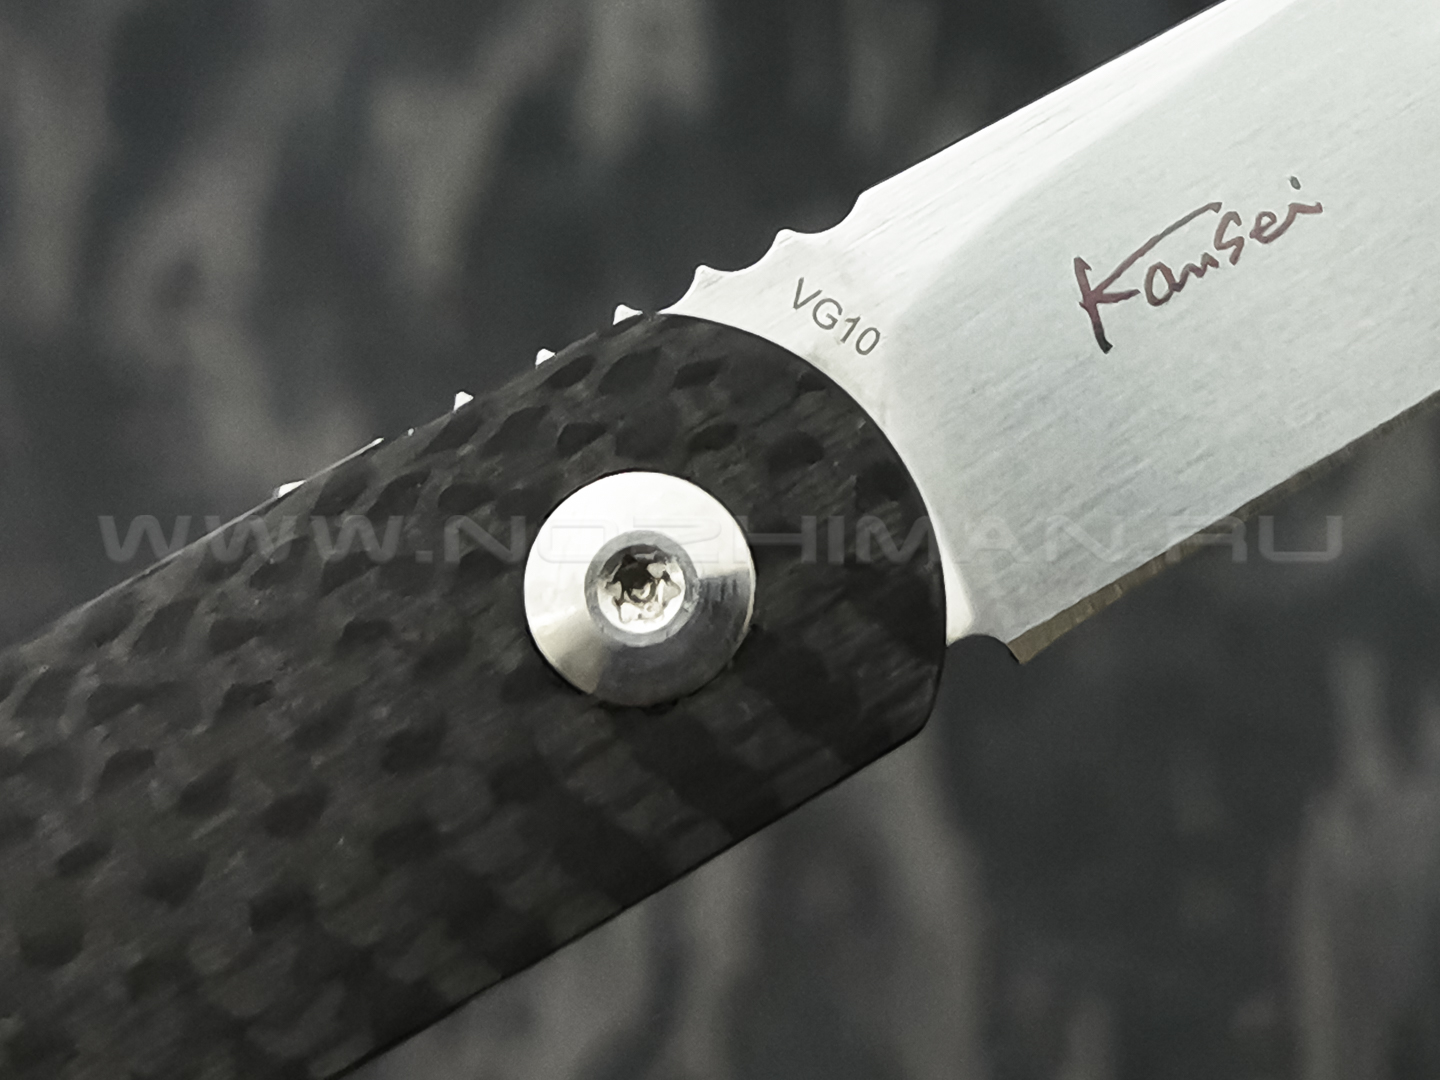 Нож Boker Plus LRF 01BO079, сталь VG-10, рукоять Carbon fiber